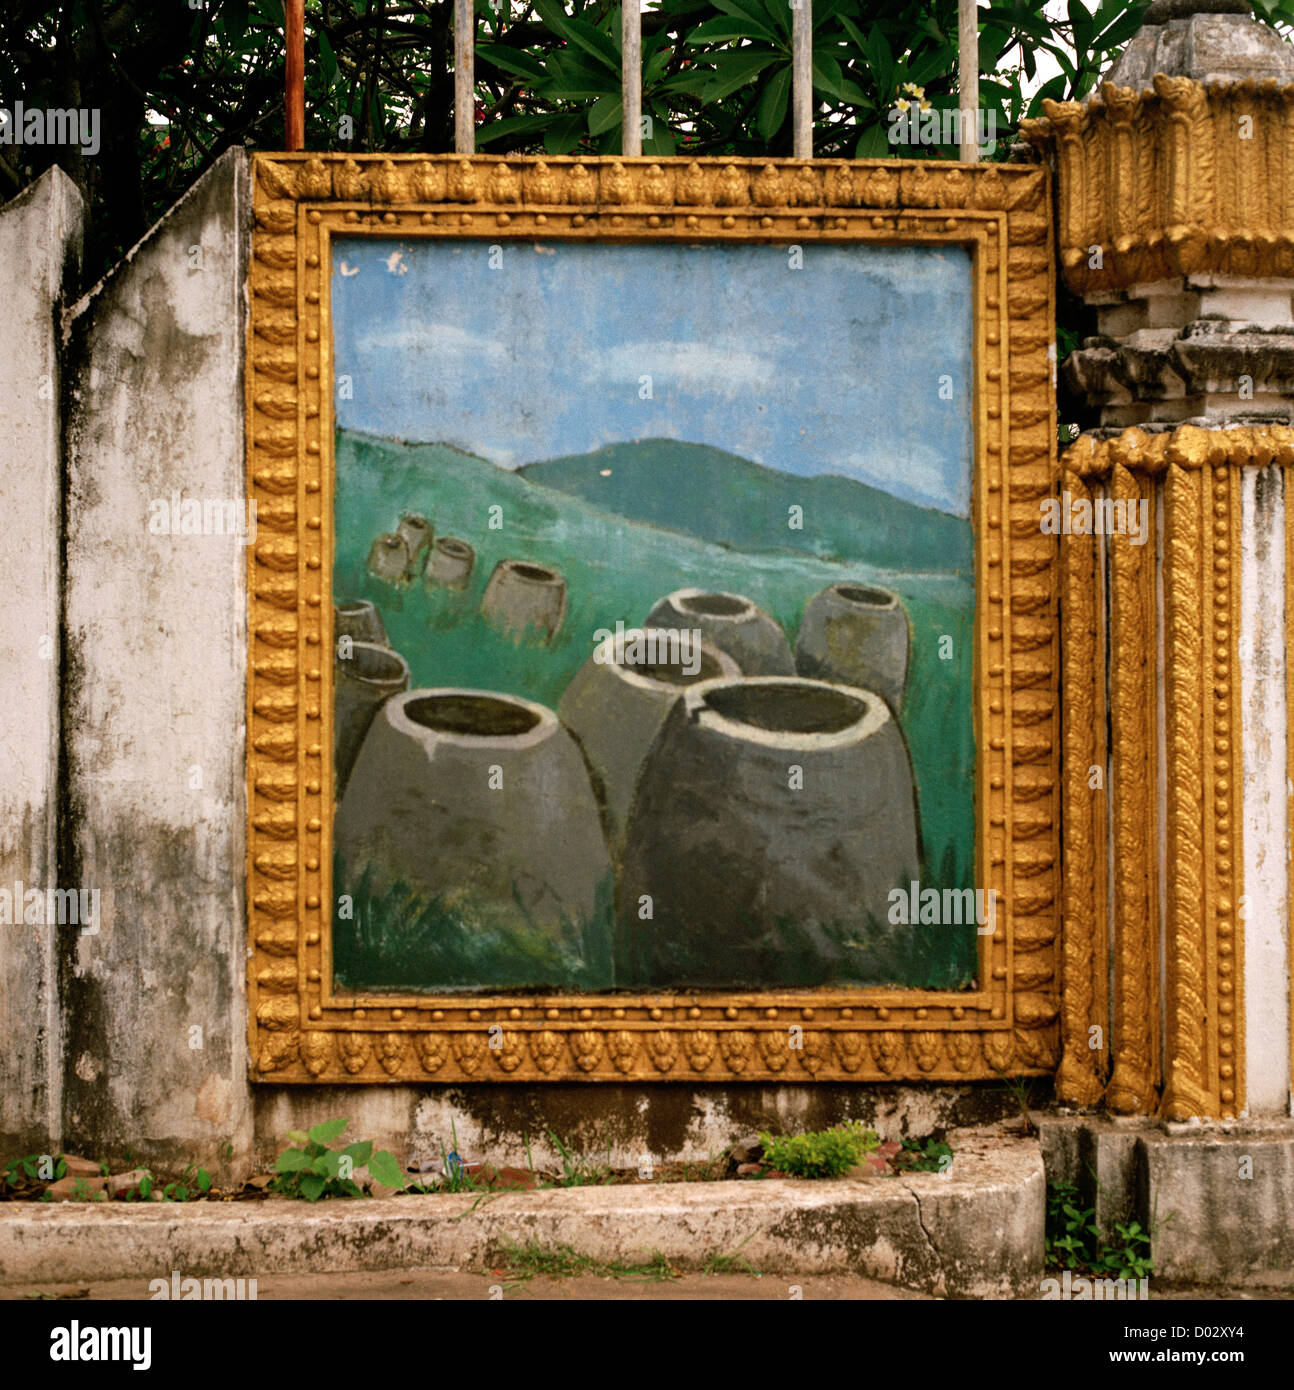 Peinture d'art de l'ancienne plaine des Jarres historique à Vientiane au Laos dans l'Indochine en Extrême-Orient Asie du Sud-Est. L'histoire de l'oeuvre billet Banque D'Images